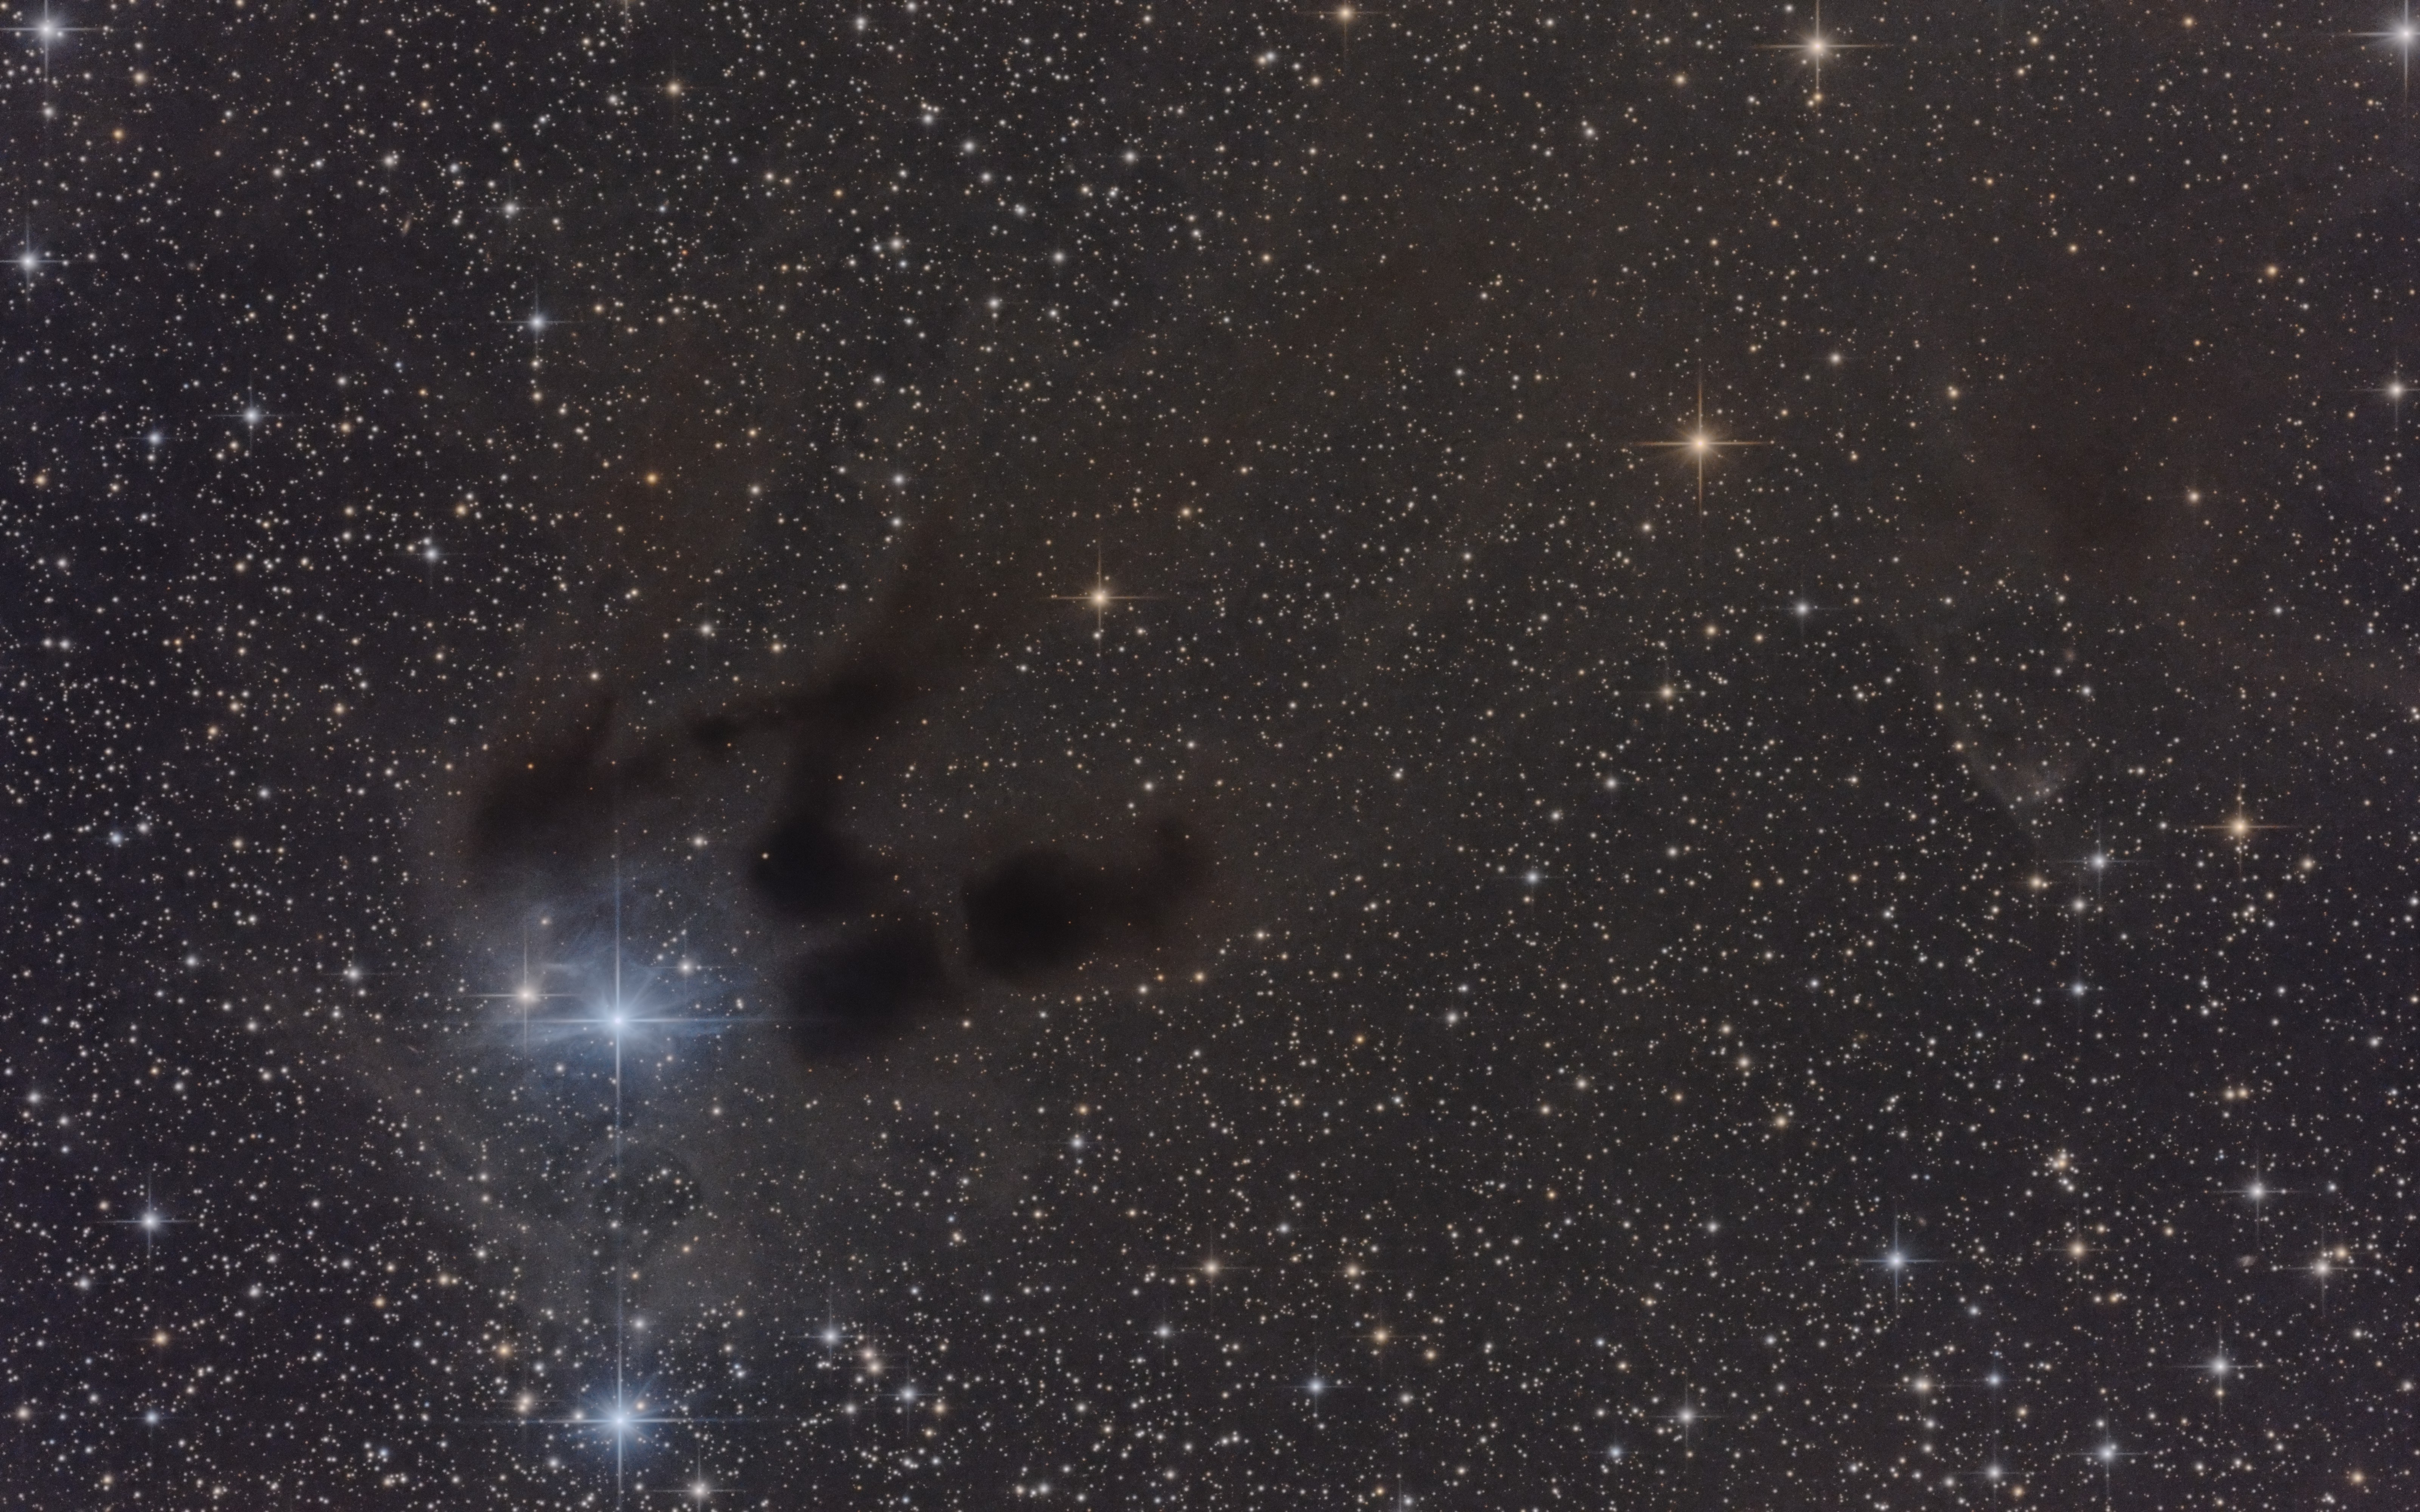 vdb31 - Reflection among Dark Nebula in Auriga